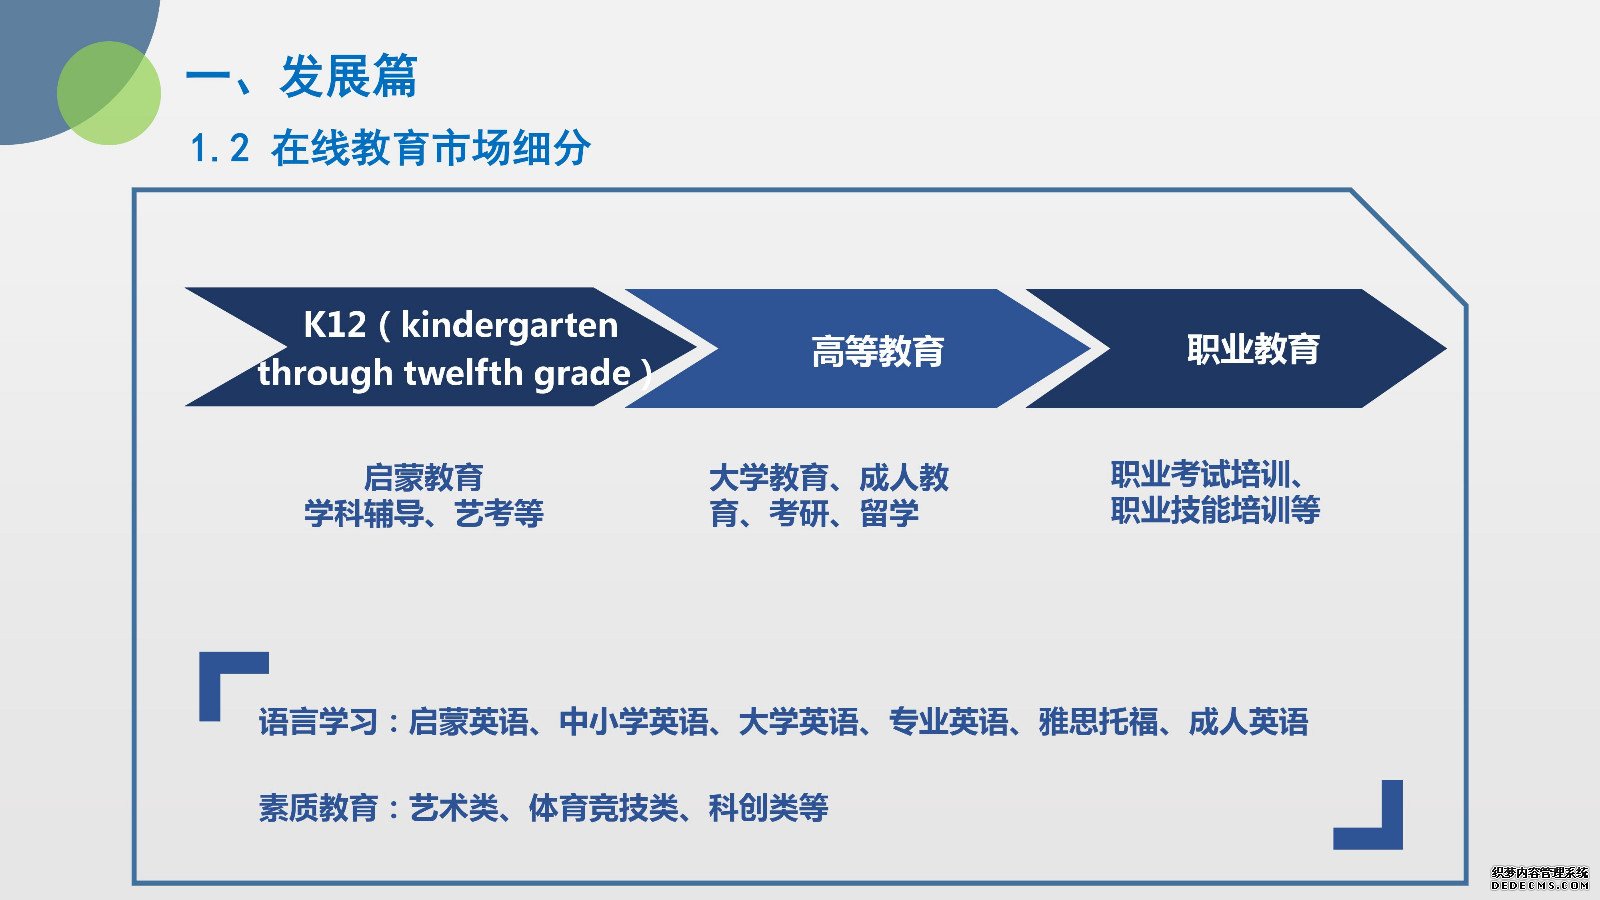 《2018年度中国在线教育市场发展报告》发布